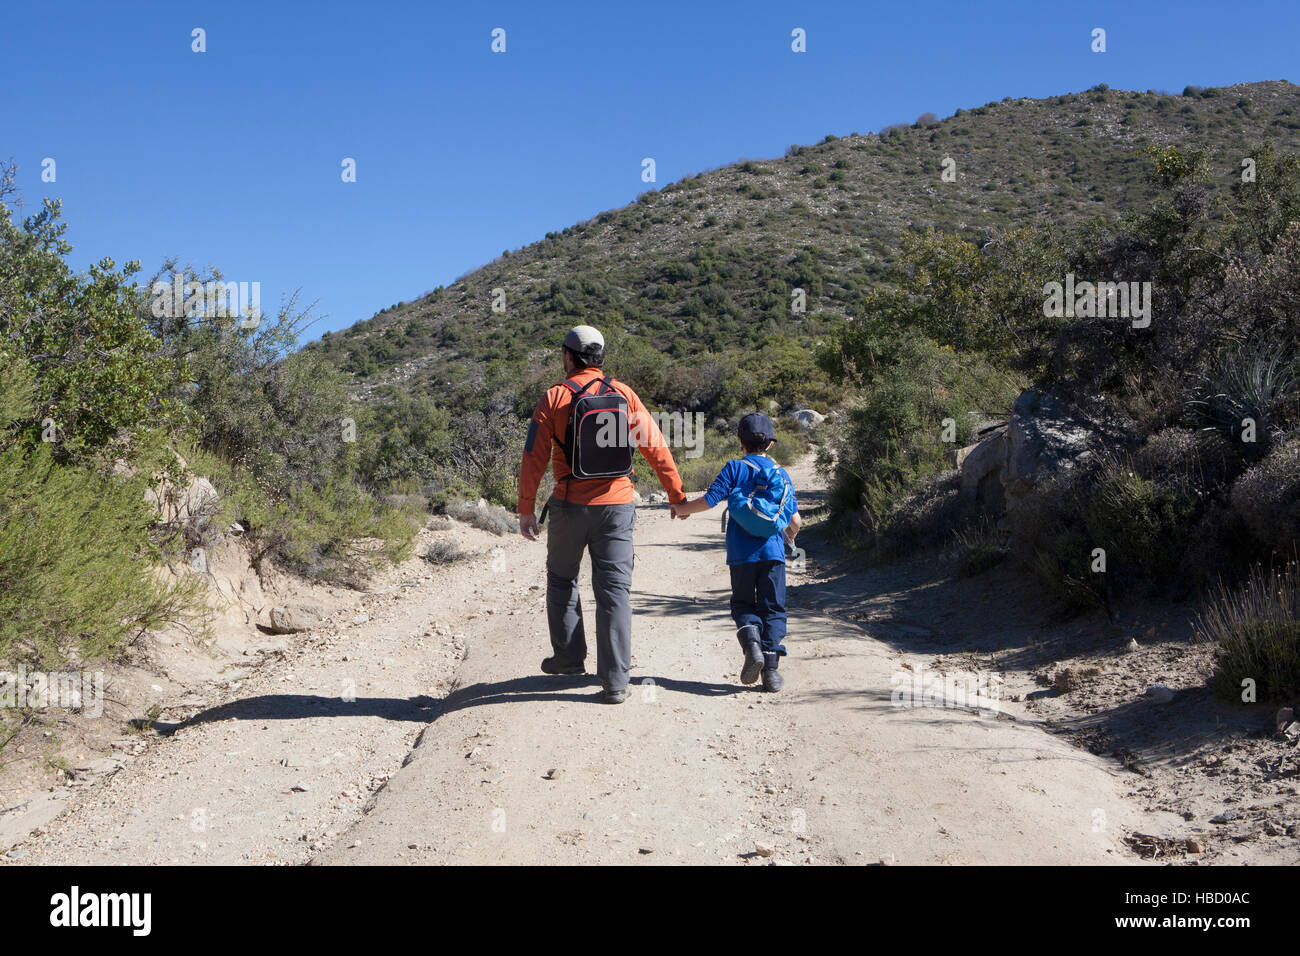 Vue arrière de l'homme et de son chemin de randonnée dans la cordillère des Andes, Valparaiso, Chili Banque D'Images